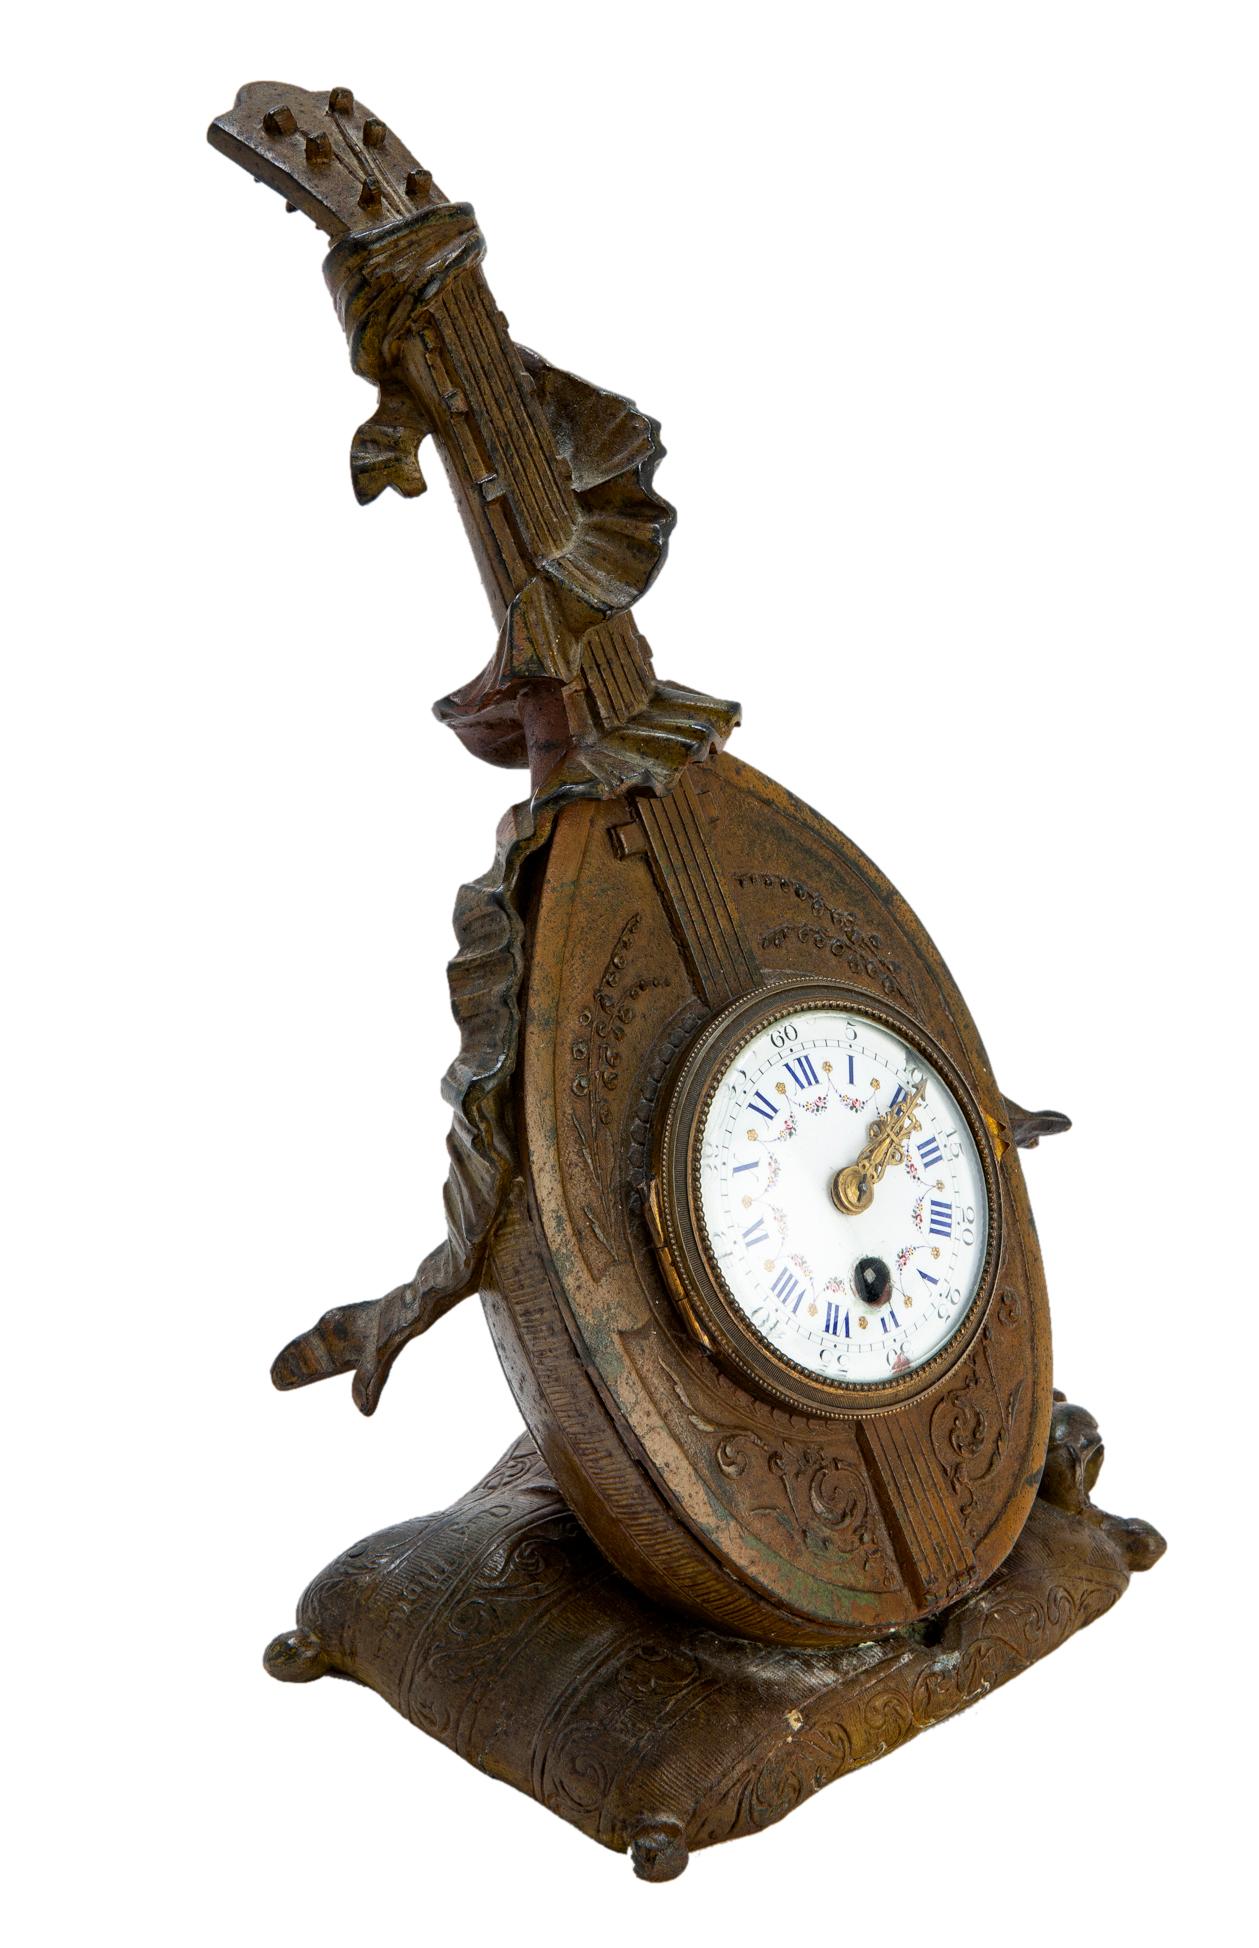 Une petite horloge de table en bronze, avec un cadran en porcelaine finement peint à la main, des aiguilles et des accents dorés. Il est très probable que le bronze ait été doré au moment de sa fabrication, mais que la dorure ait été enlevée lors du